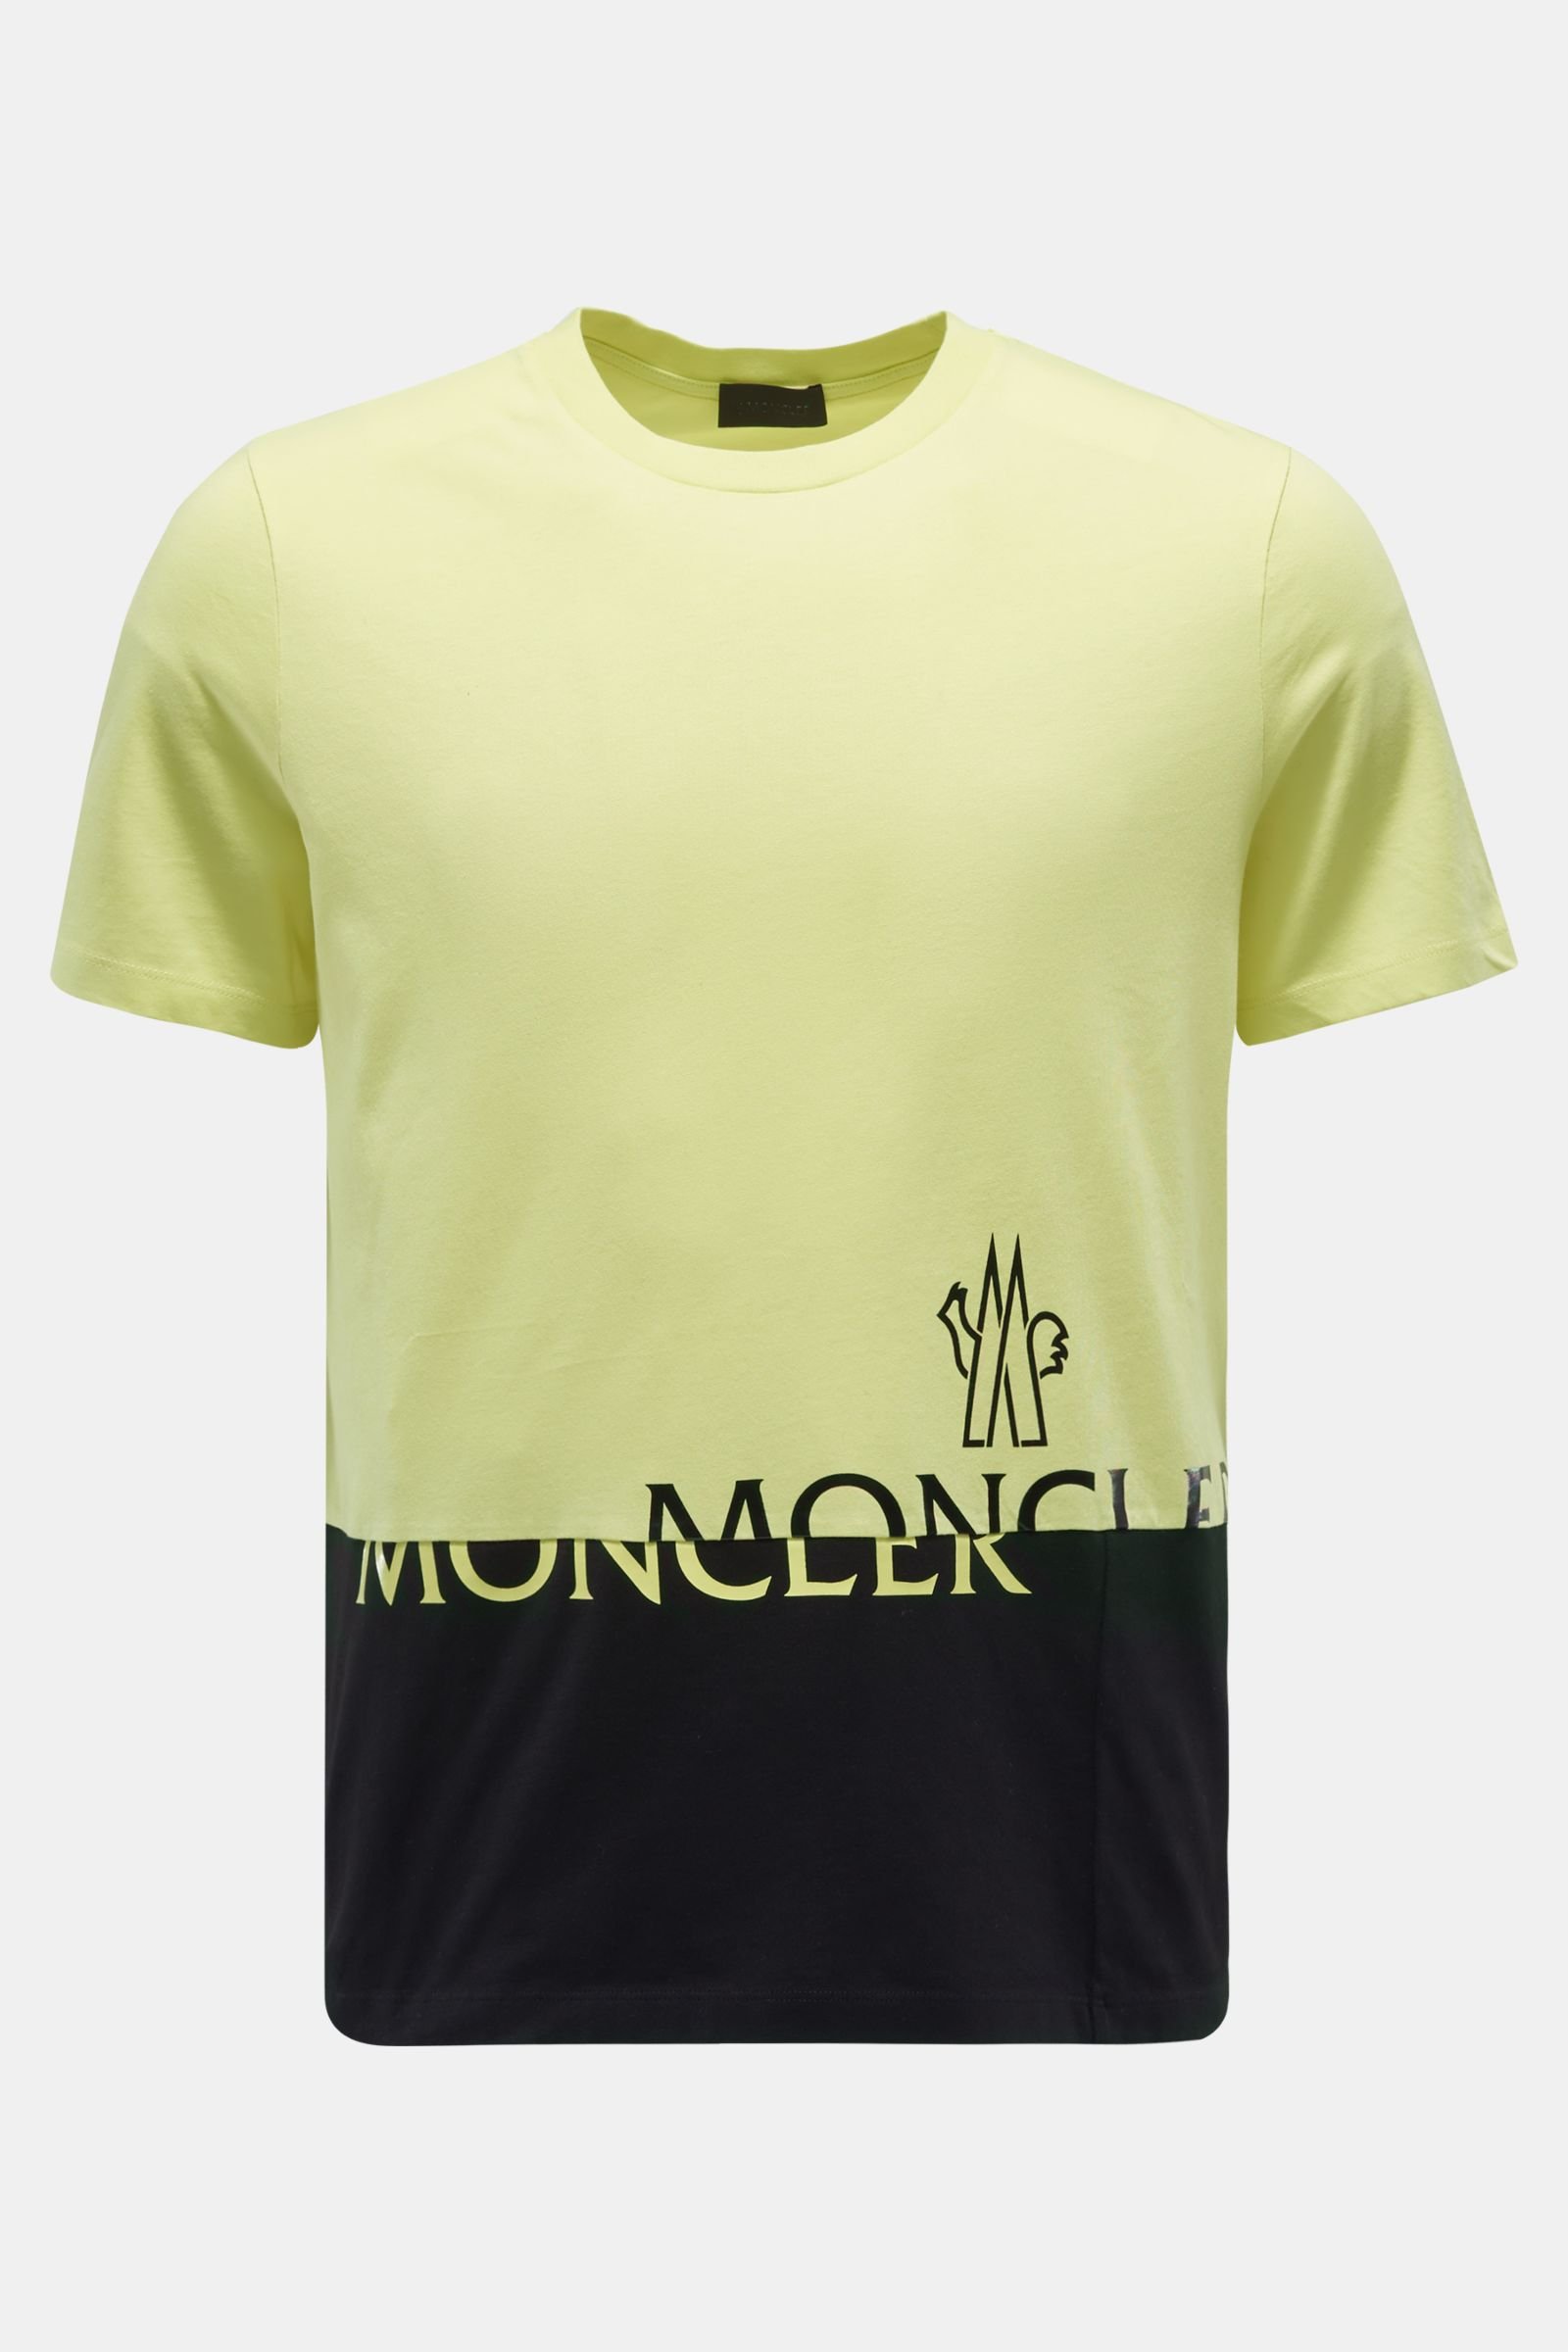 Rundhals-T-Shirt gelb/schwarz 